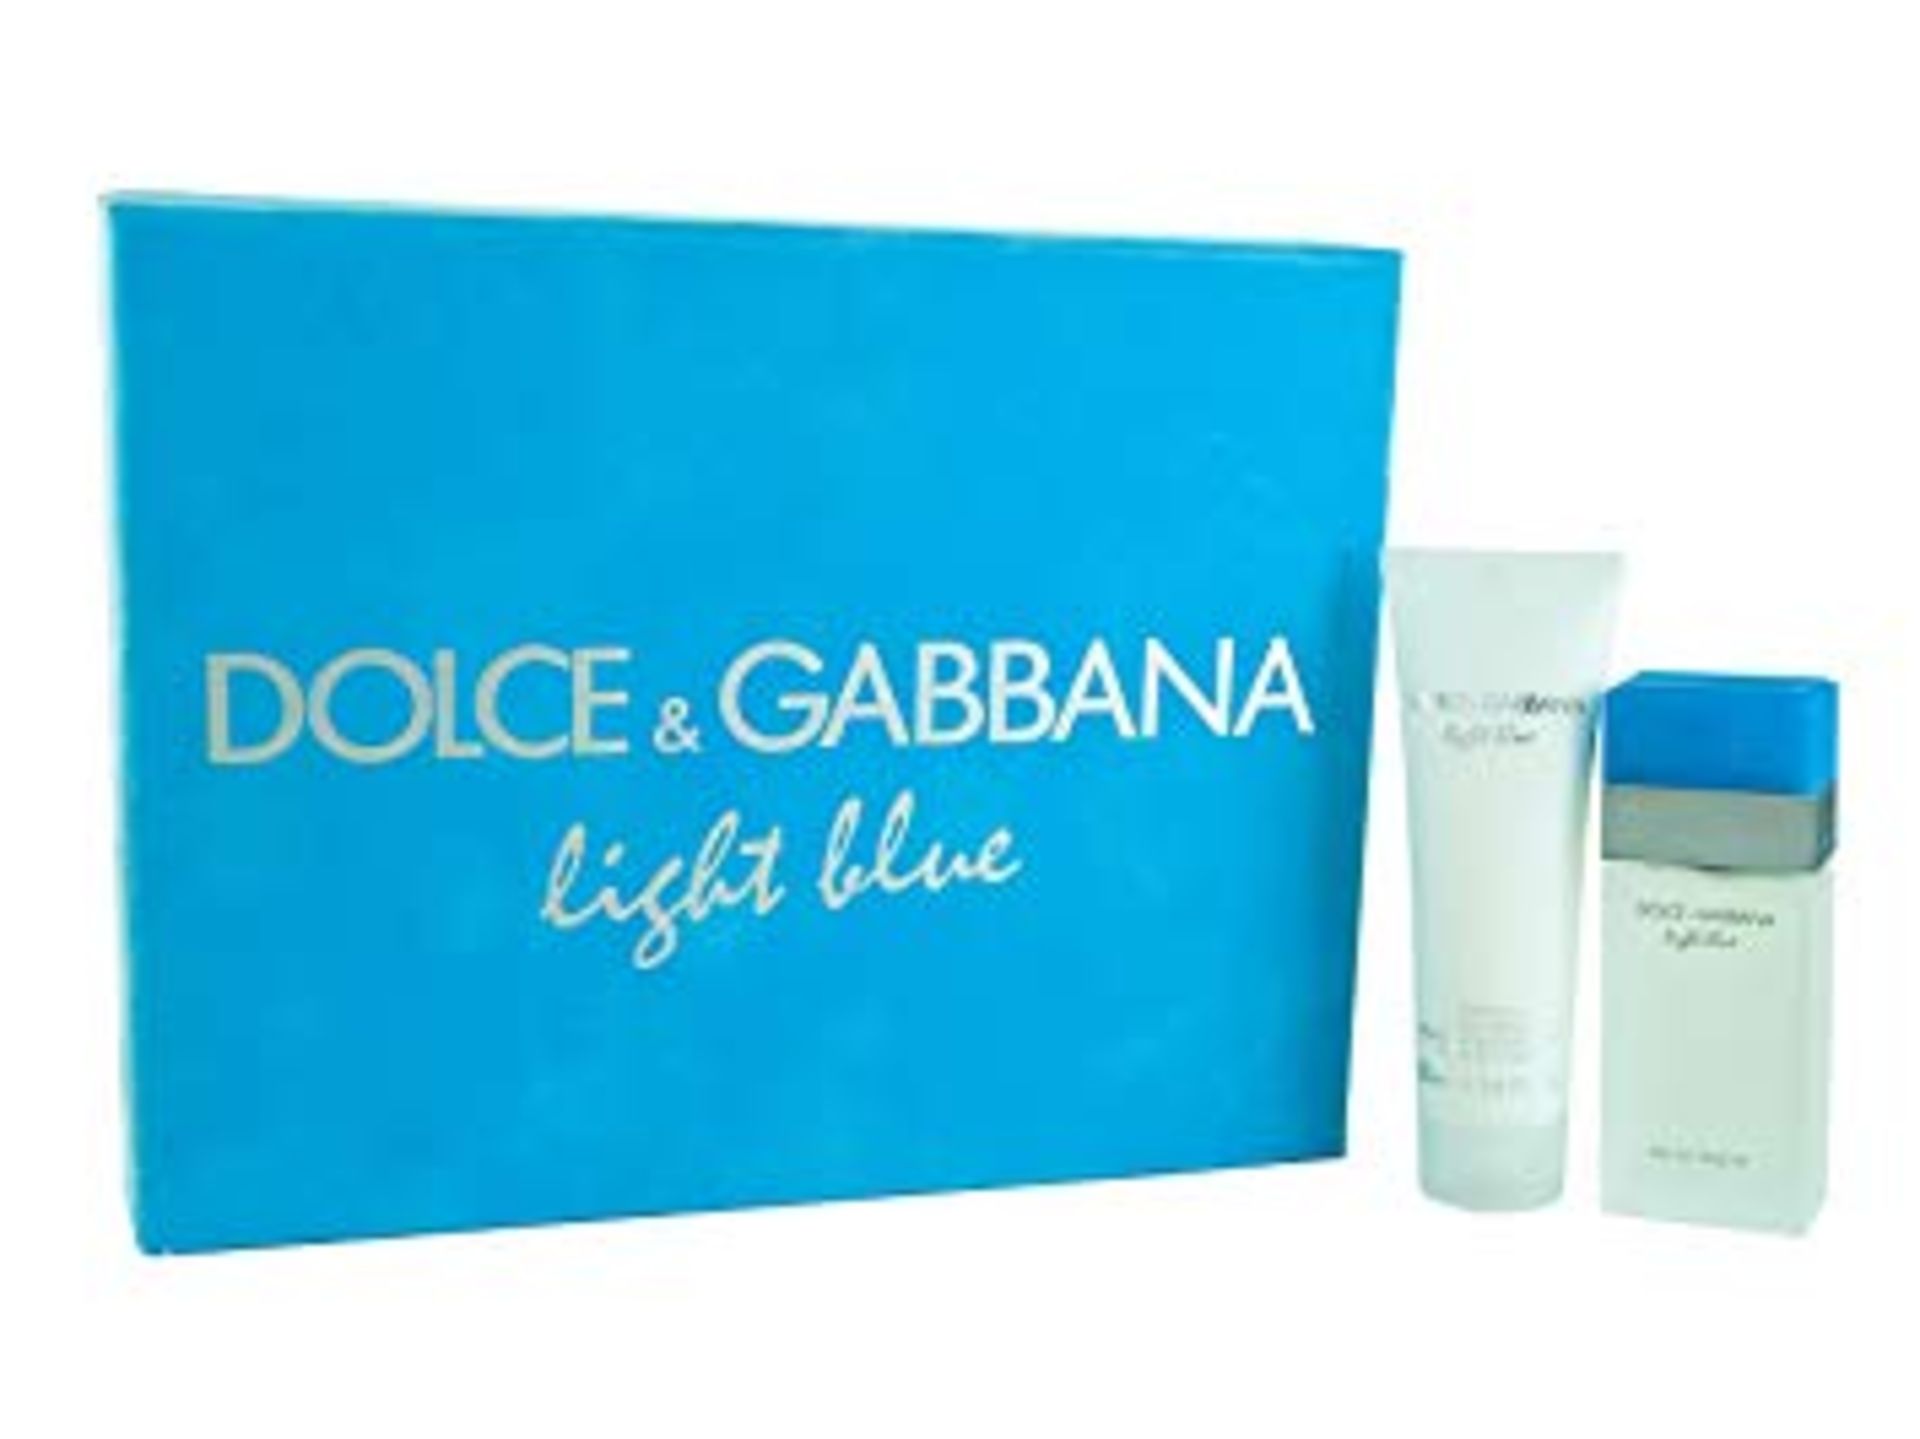 V Brand New Ladies Dolce & Gabbana Light Blue Gift Set - 25ml Eau De Toilette Spray & 50ml